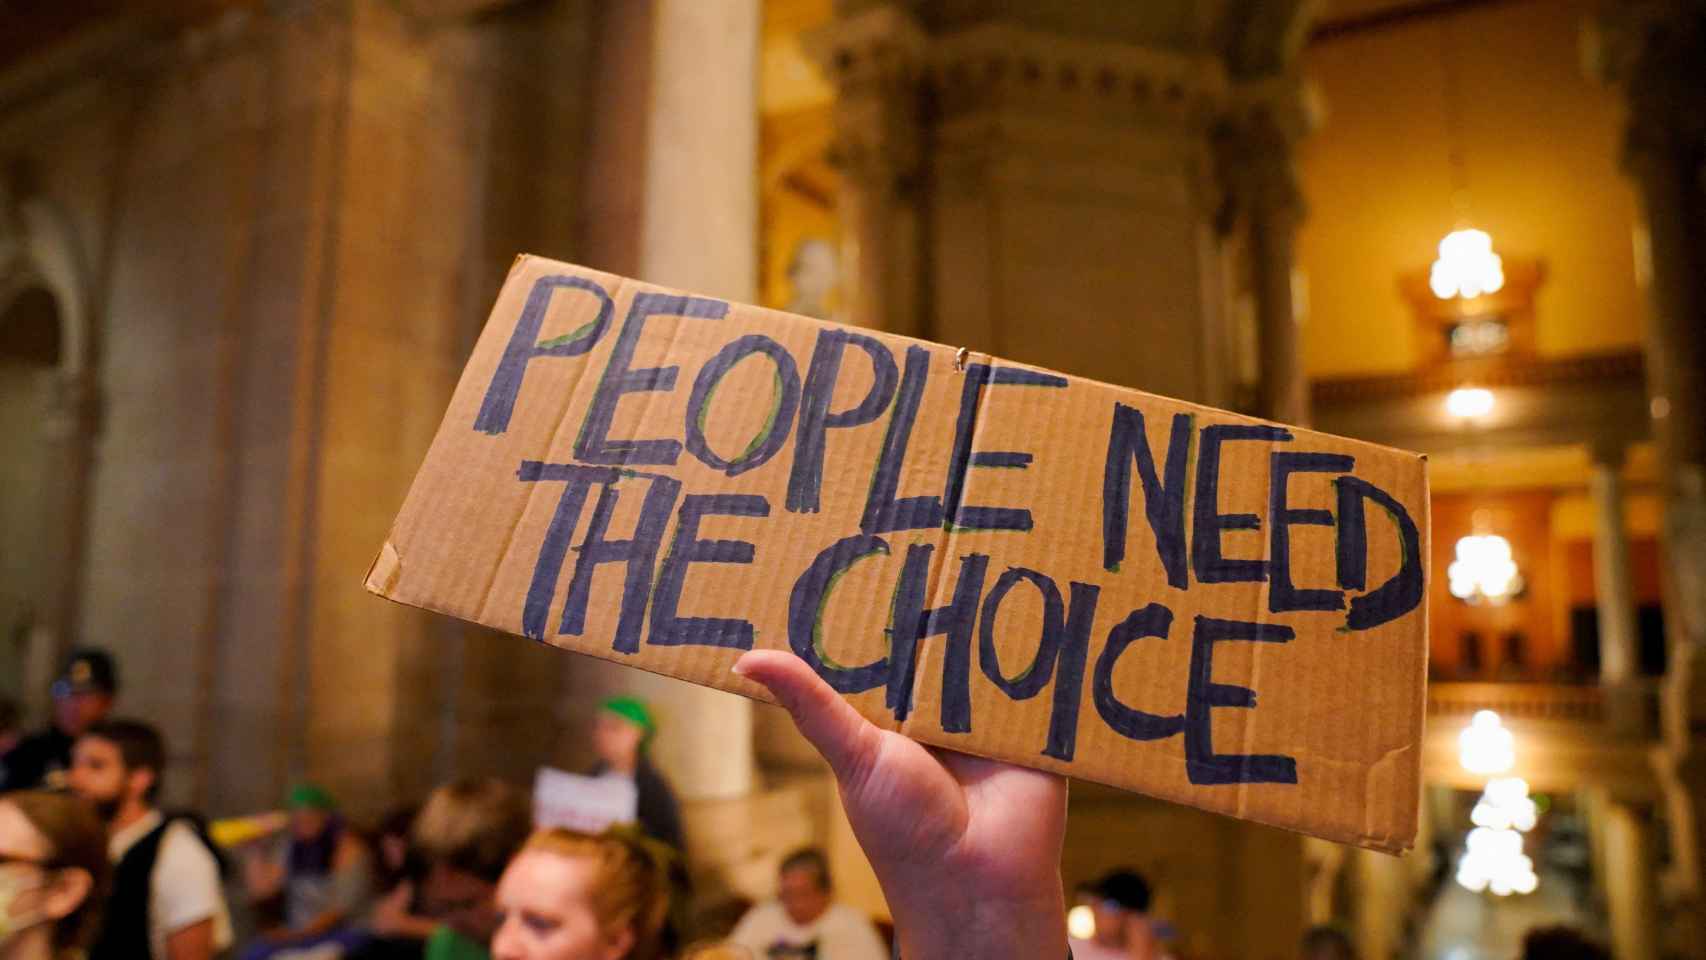 La gente necesita elegir, asegura una pancarta durante una manifestación en Indiana.